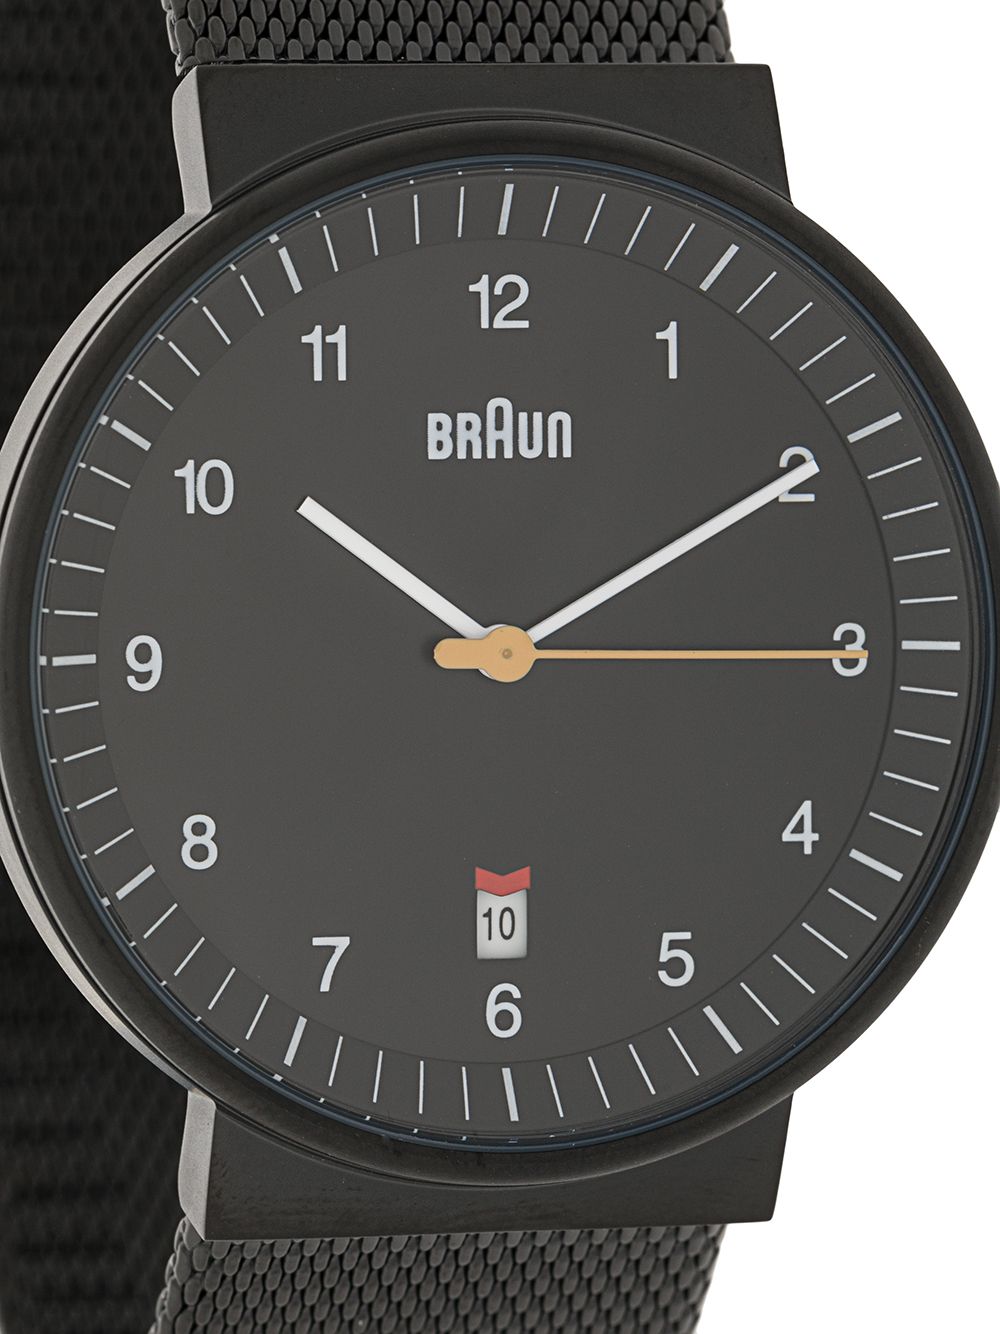 фото Braun watches наручные часы bn0032 40 мм